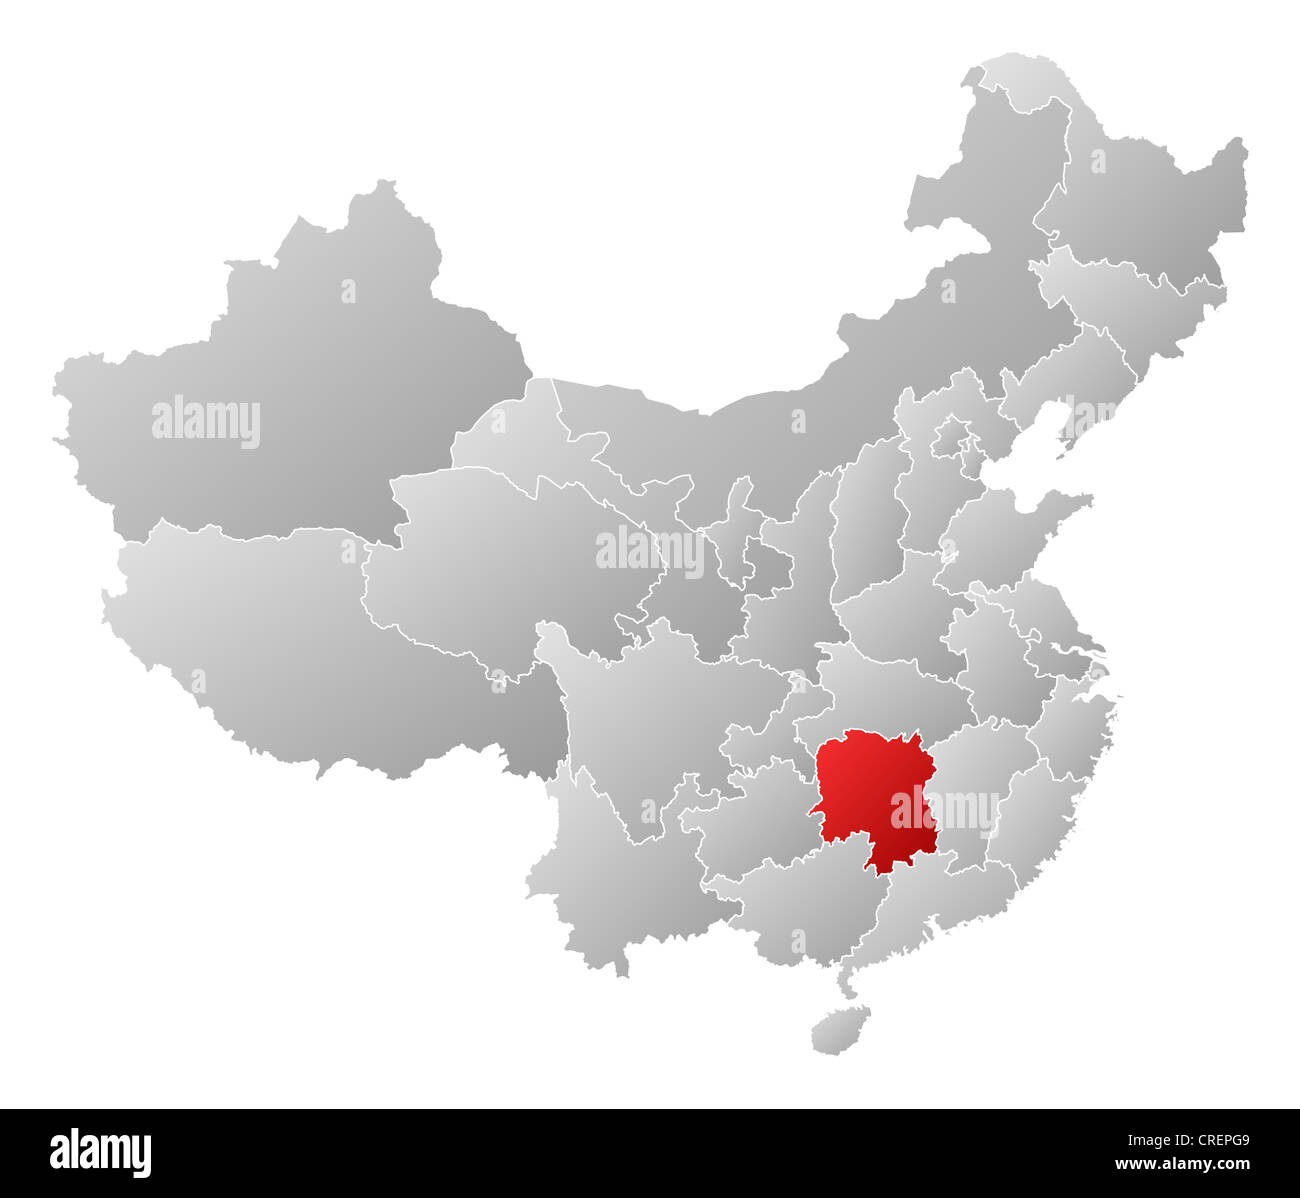 Politische Landkarte von China mit den verschiedenen Provinzen Hunan wo markiert ist. Stockfoto